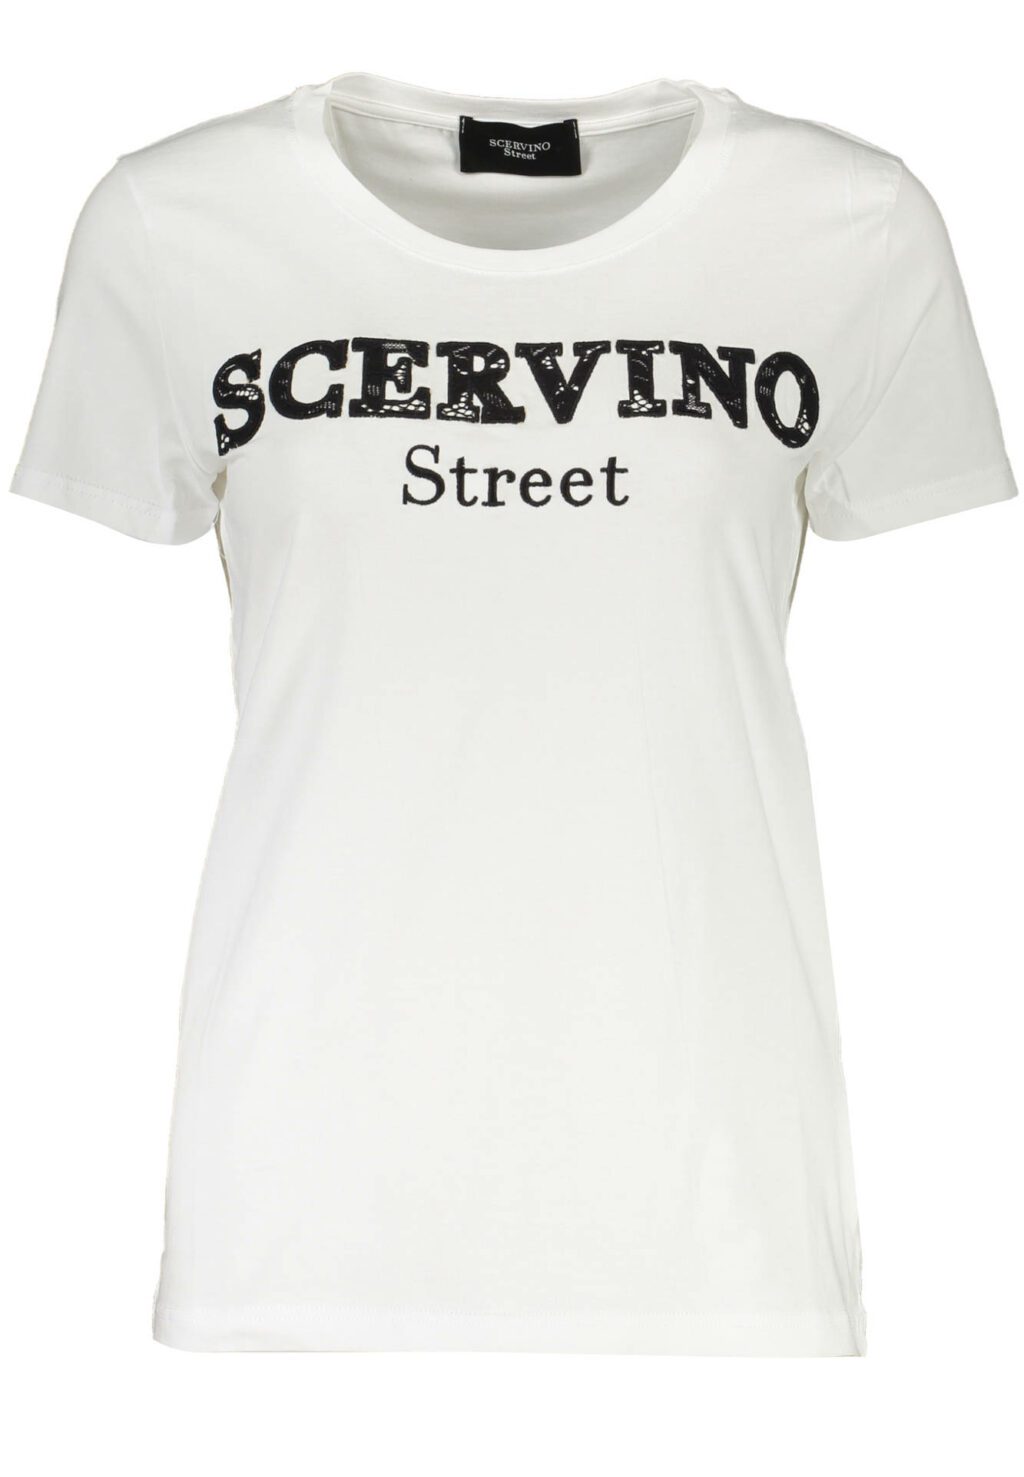 SCERVINO STREET WOMEN'S SHORT SLEEVE T-SHIRT WHITE D38TL0699-TSD006_BIANCO_SC001-BIANCO